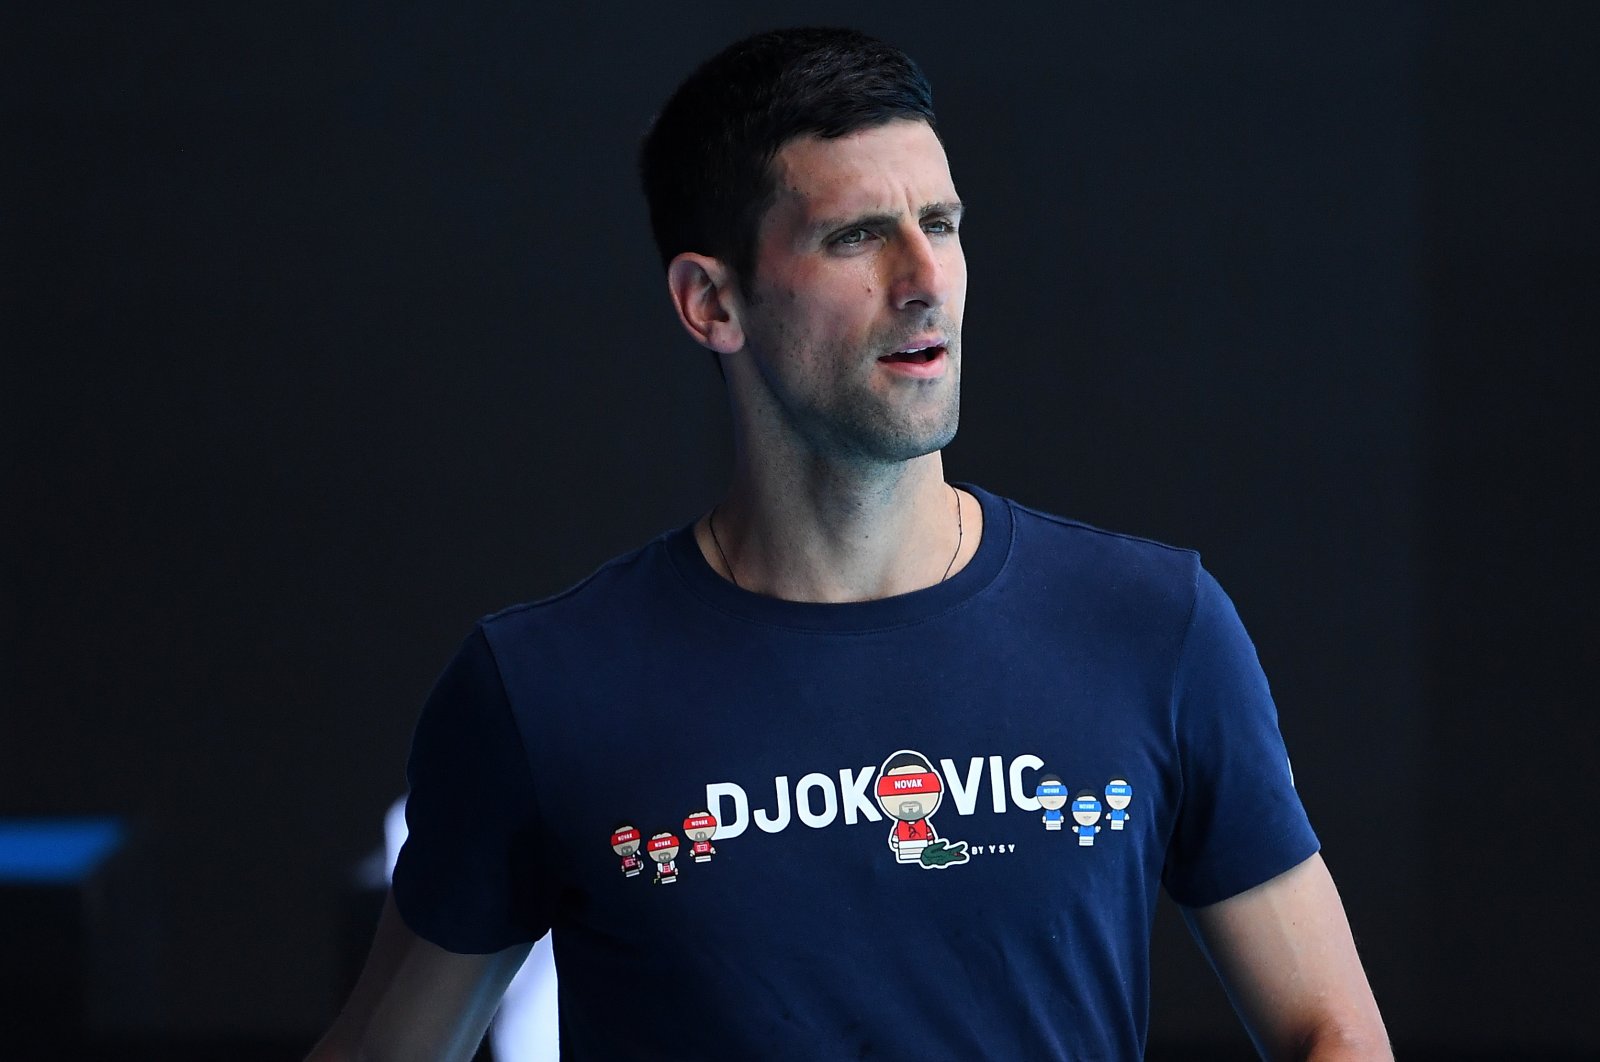 Djokovic minta maaf atas ‘kesalahan’ saat perjuangan untuk bertahan di Australia berlanjut